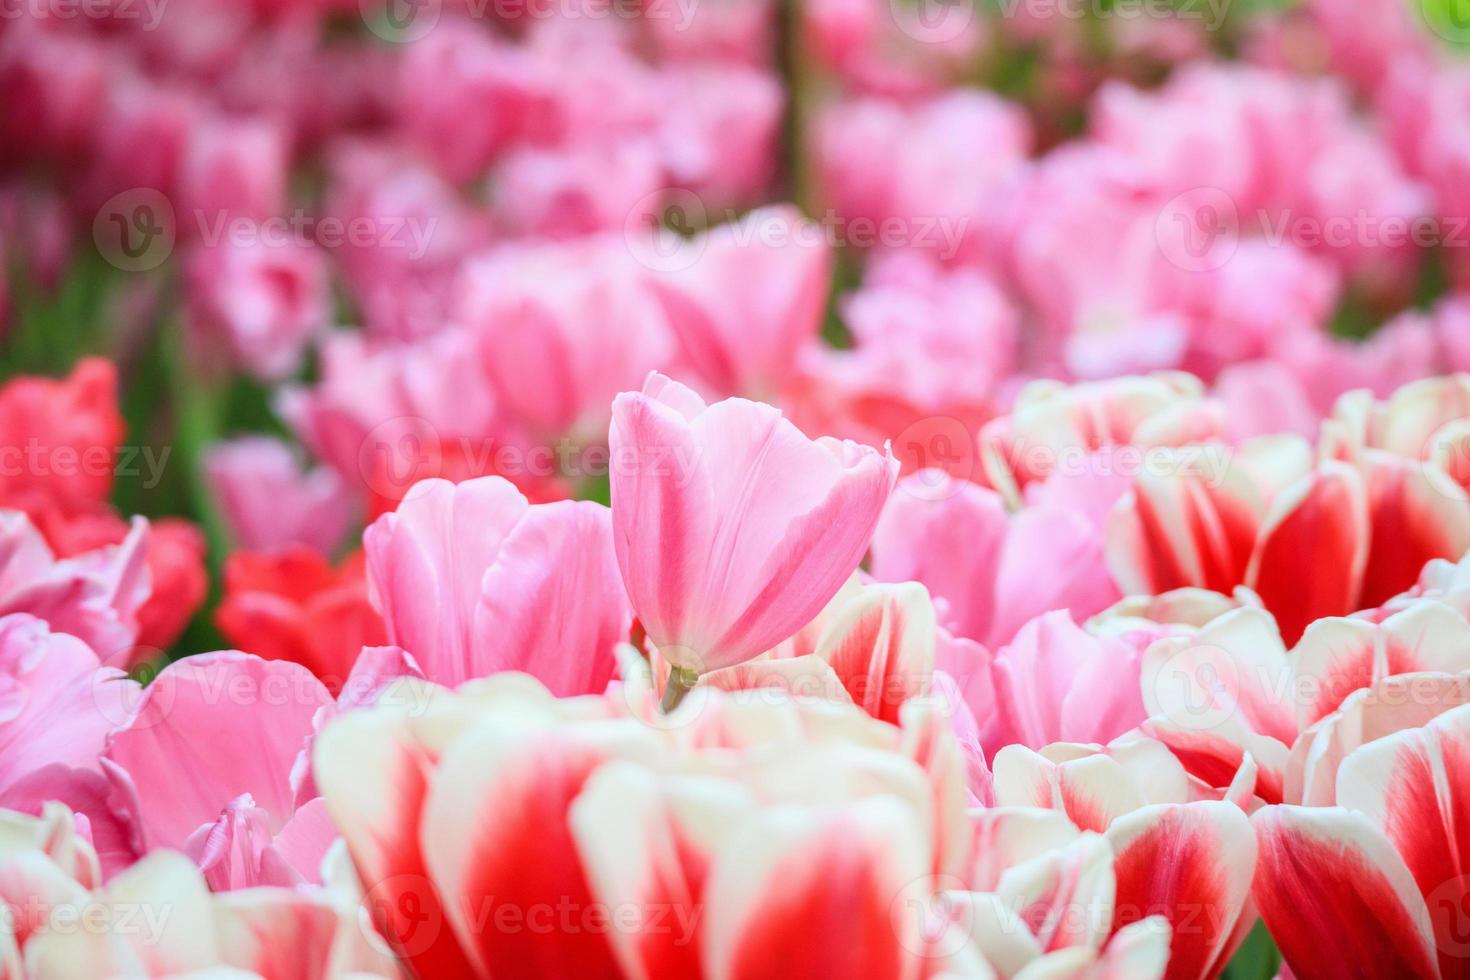 flor de tulipanes de colores frescos florecen en el jardín foto